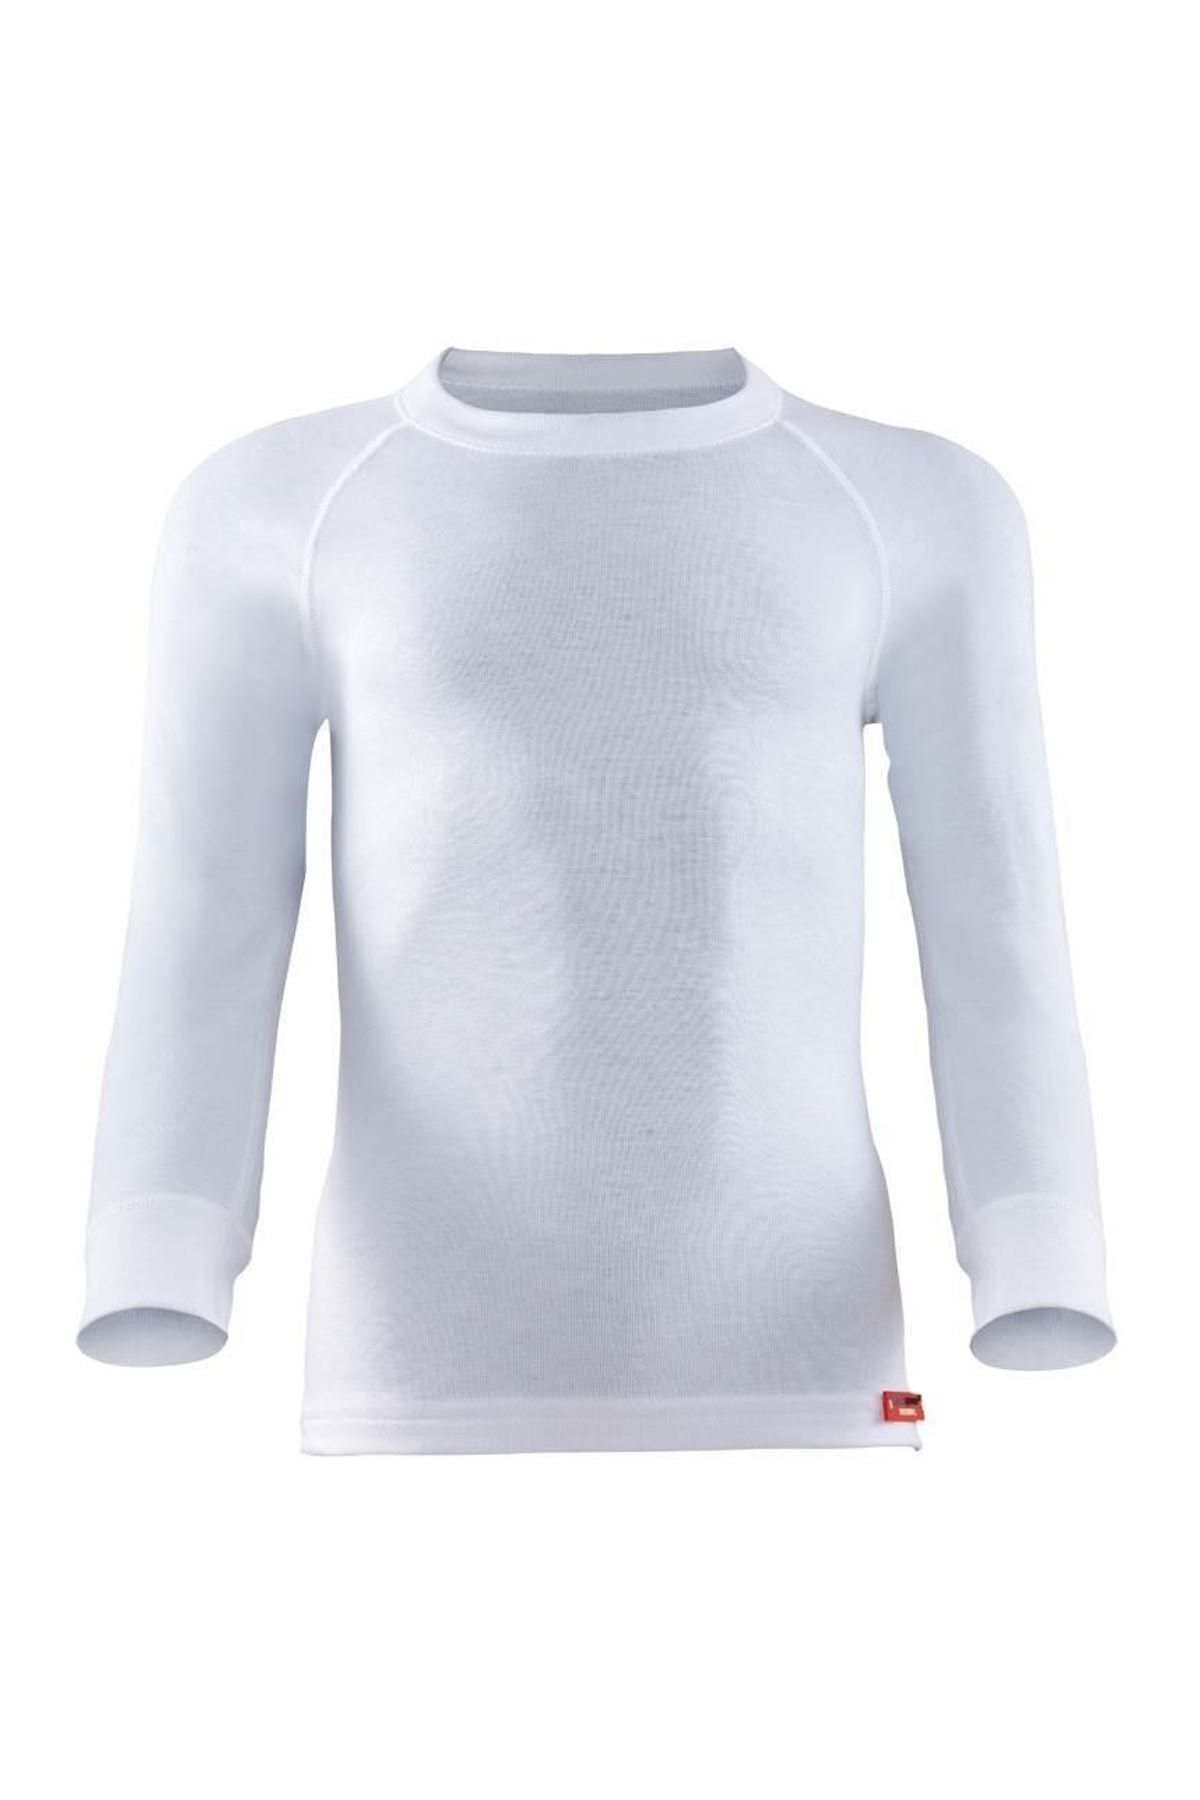 Blackspade Unisex Çocuk Beyaz Termal Uzun Kol T-shirt 9265